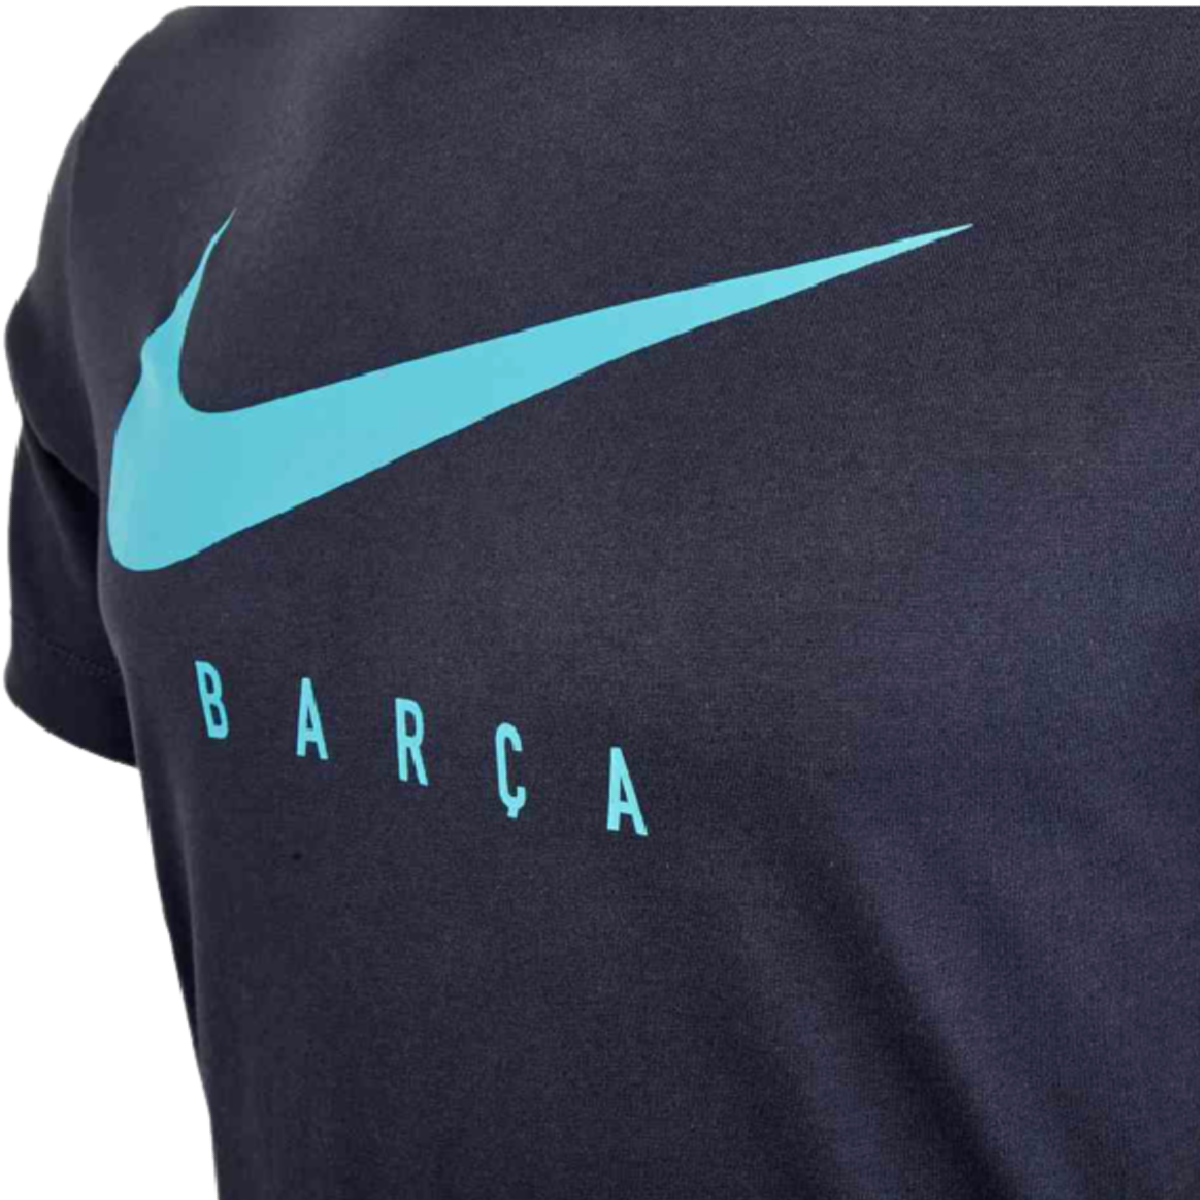 FC Barcelona Men's Soccer T-Shirt